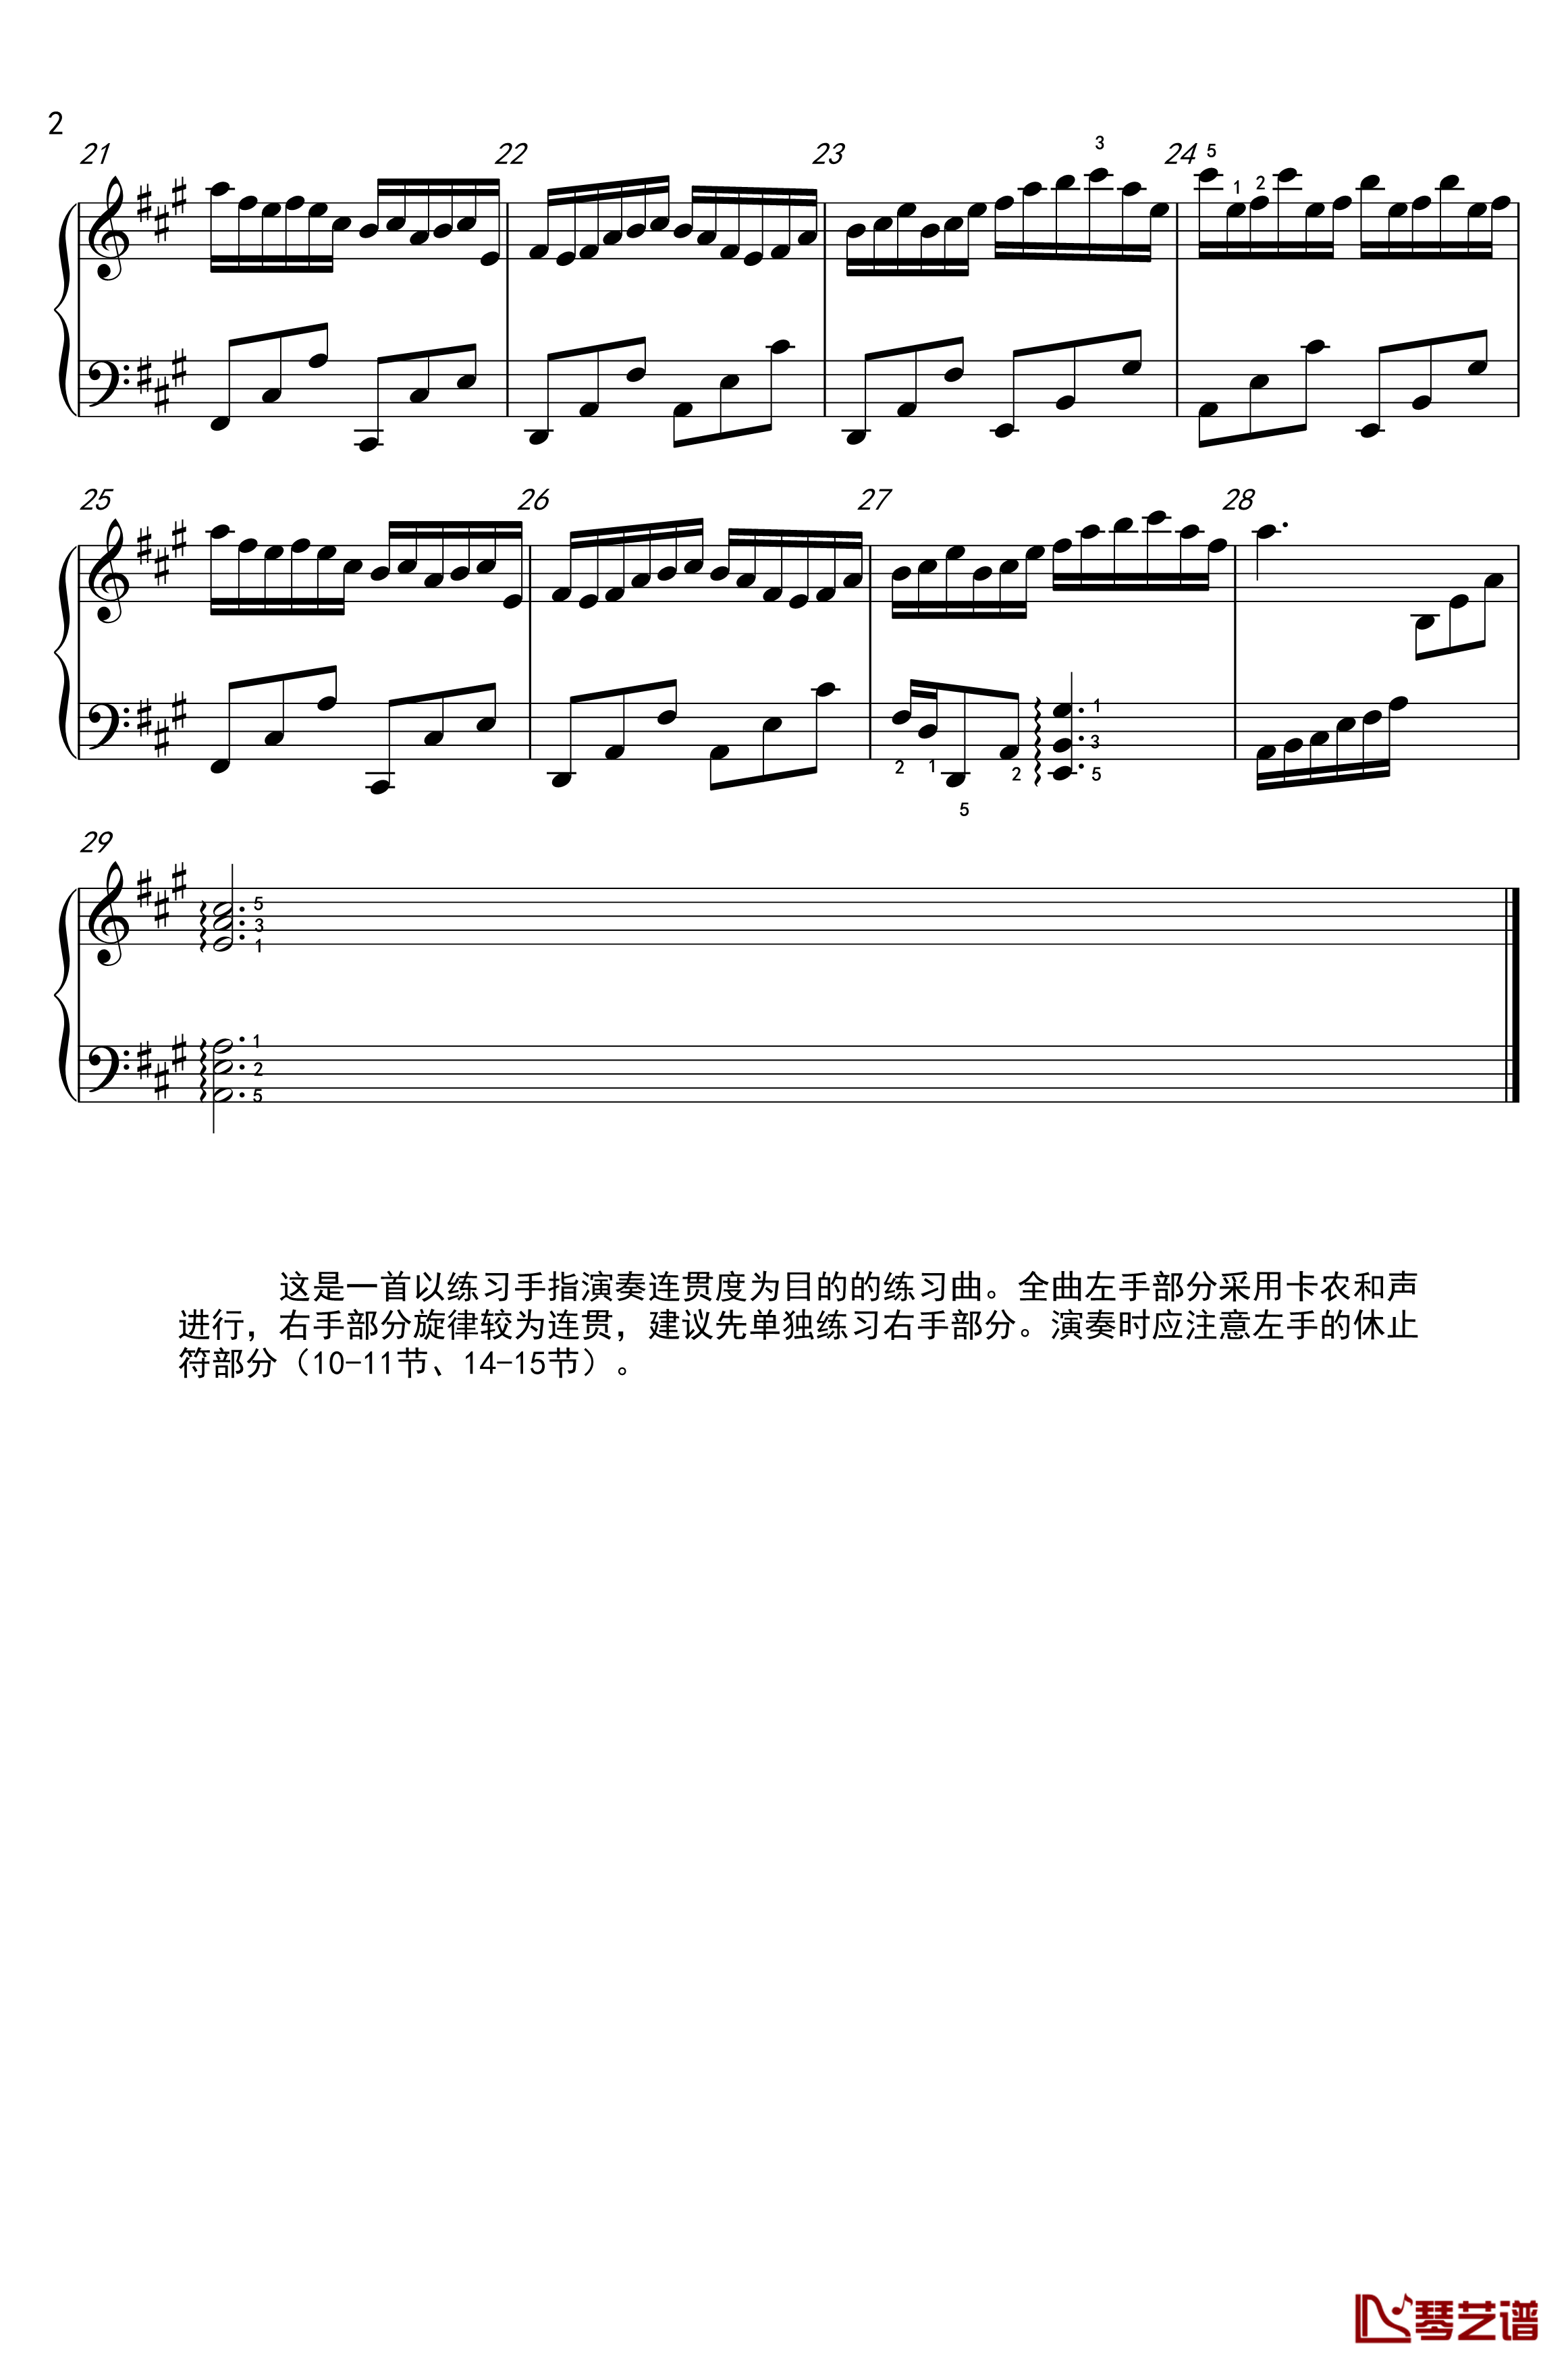 卡农连奏练习曲钢琴谱-xvv123452